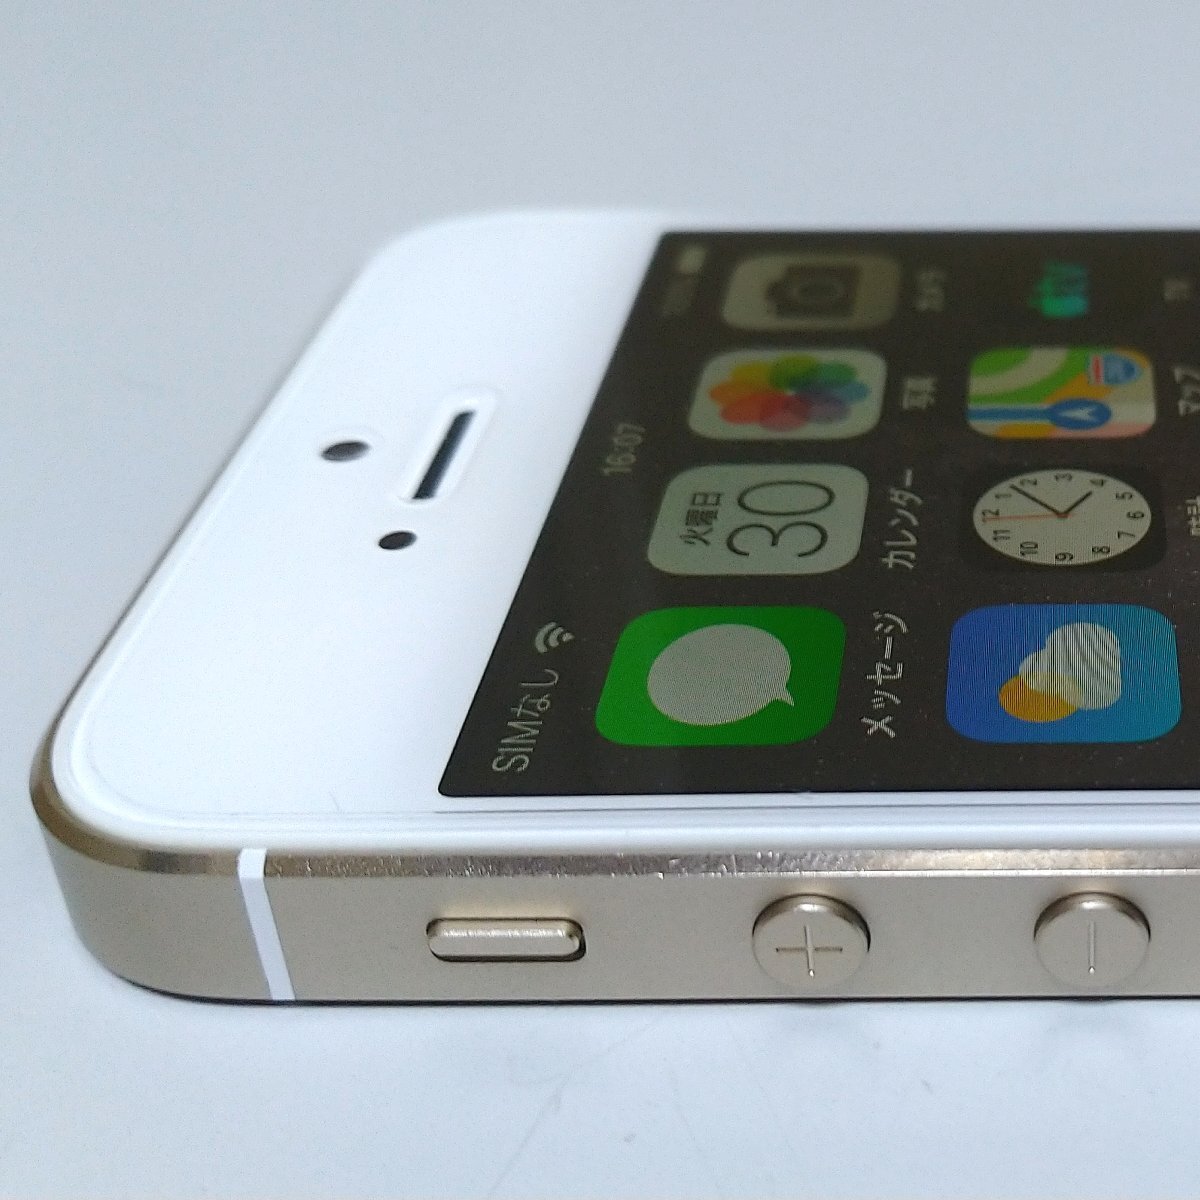 送料無料 au Apple iPhone5s 16GB ME334J/A A1453 ゴールド 白ロム ネットワーク利用制限○ 充電回数84回 必ず内容確認